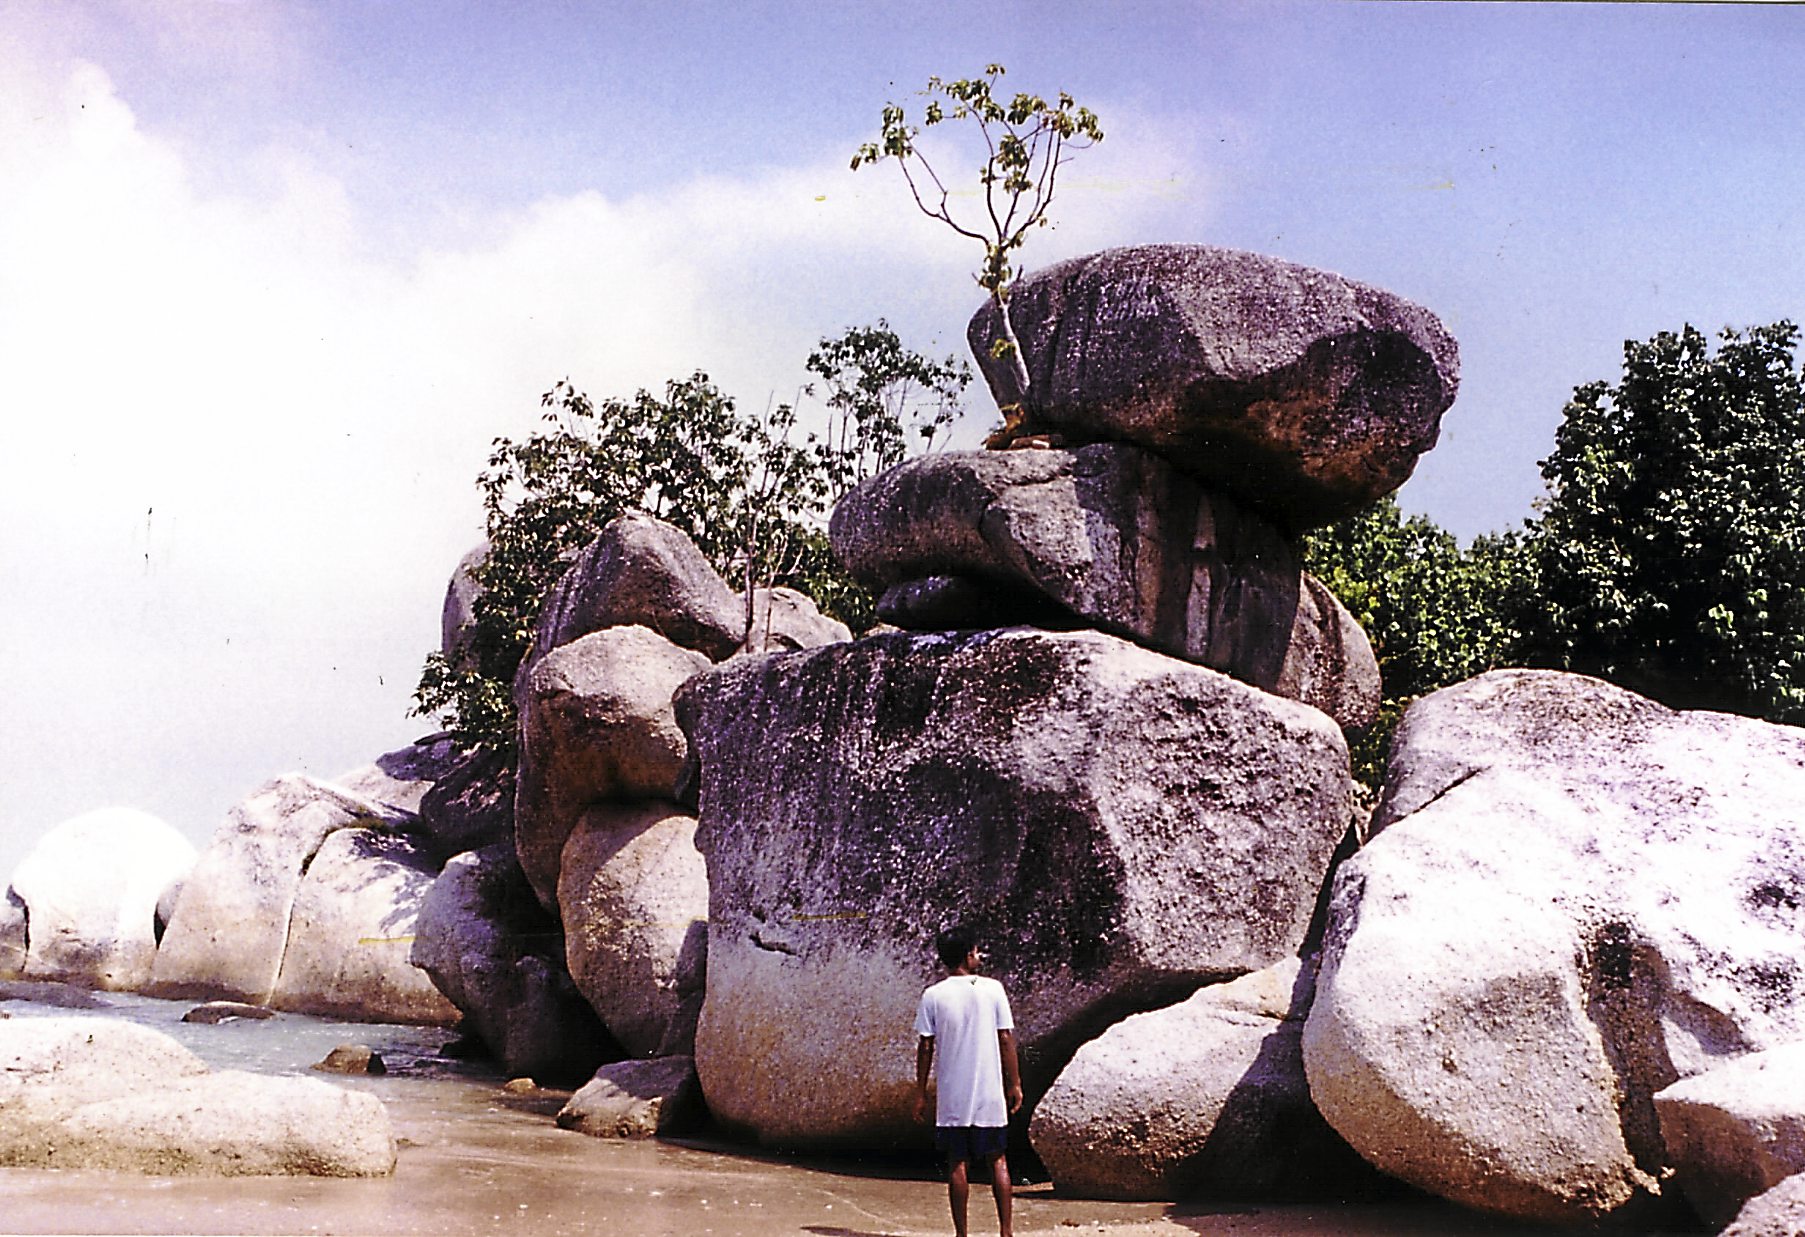 April 1999 The balancing rocks.